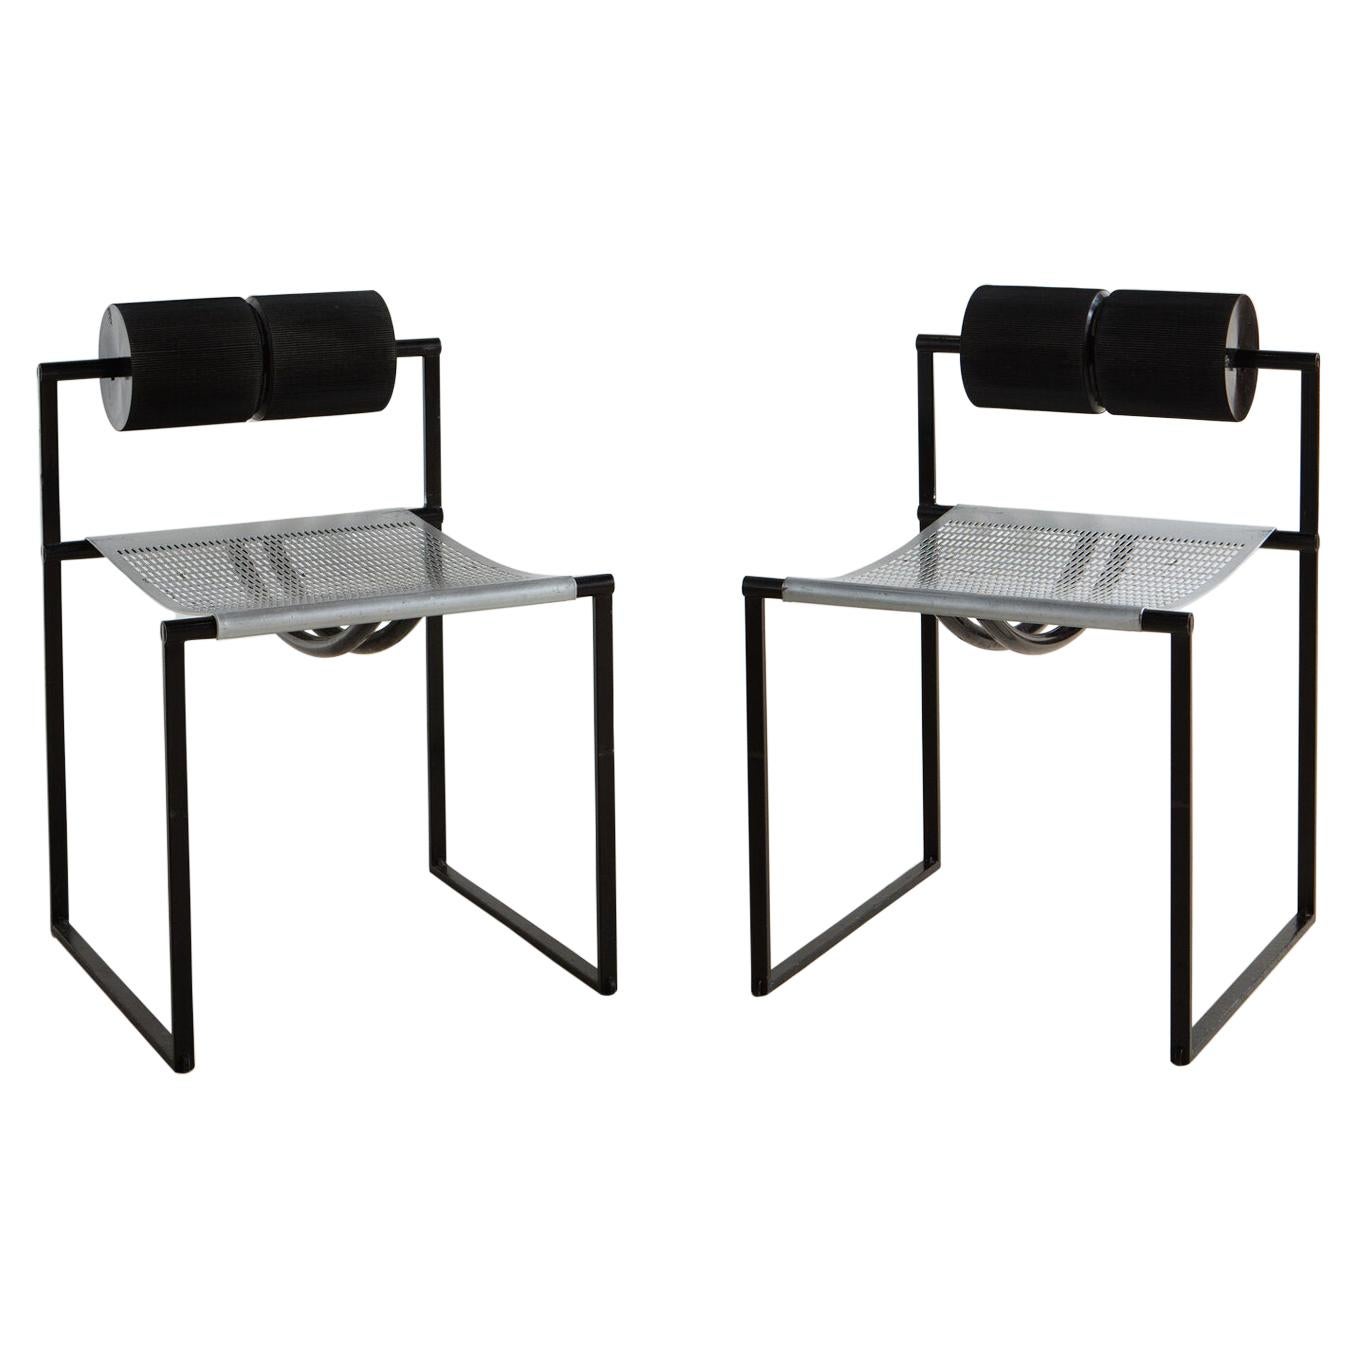 Pair of Postmodern Seconda Chairs by Mario Botta